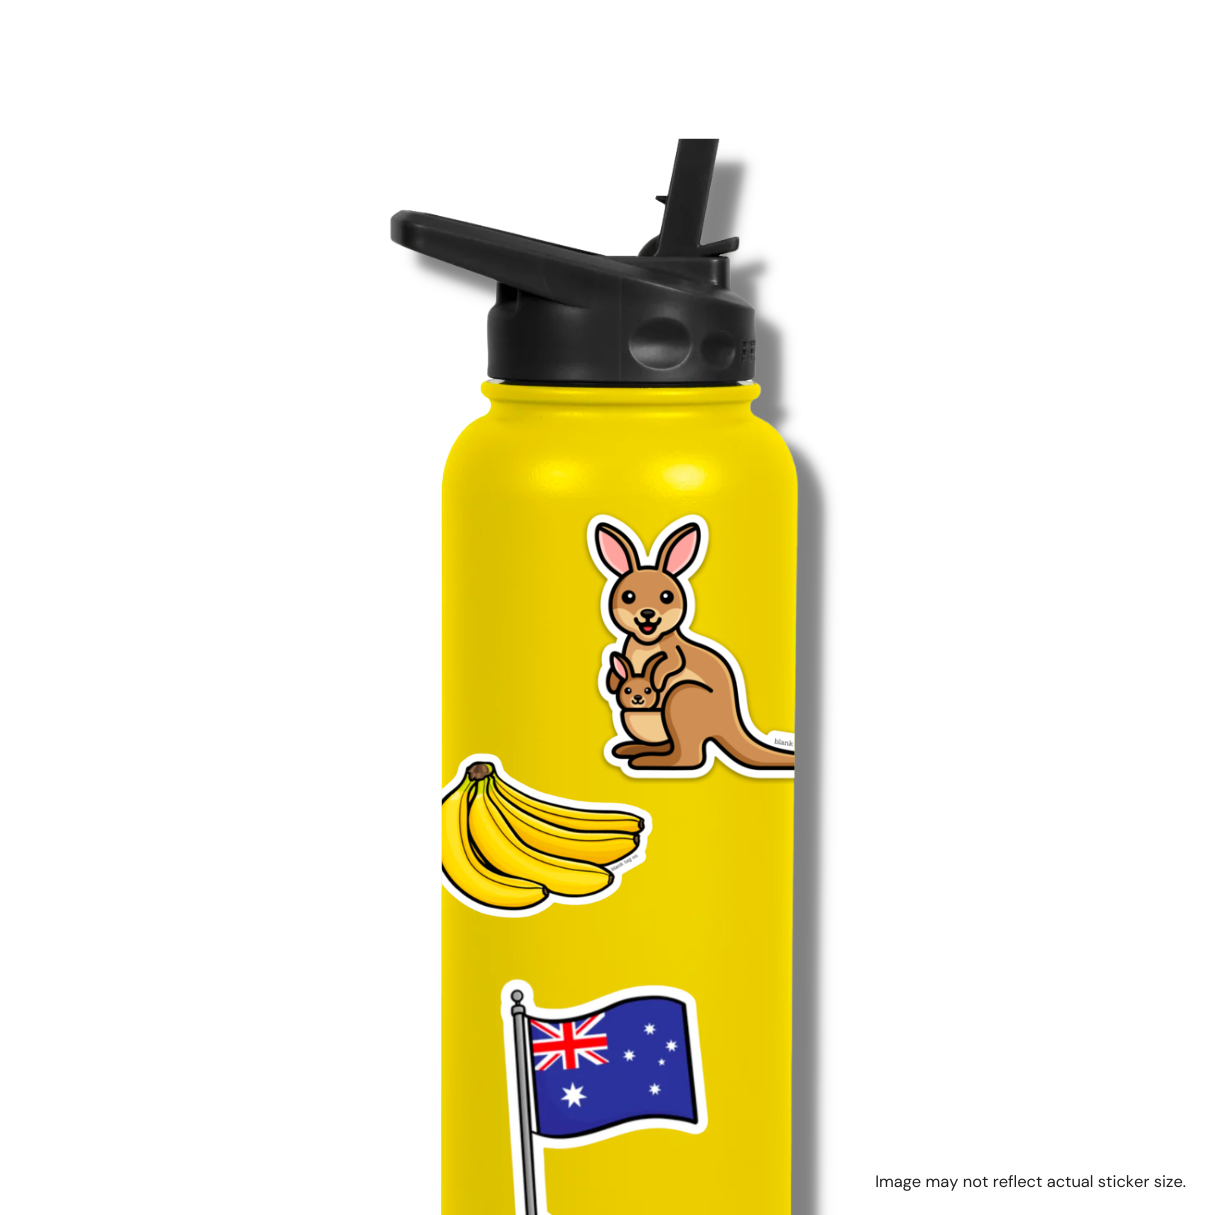 The Kangaroo Sticker